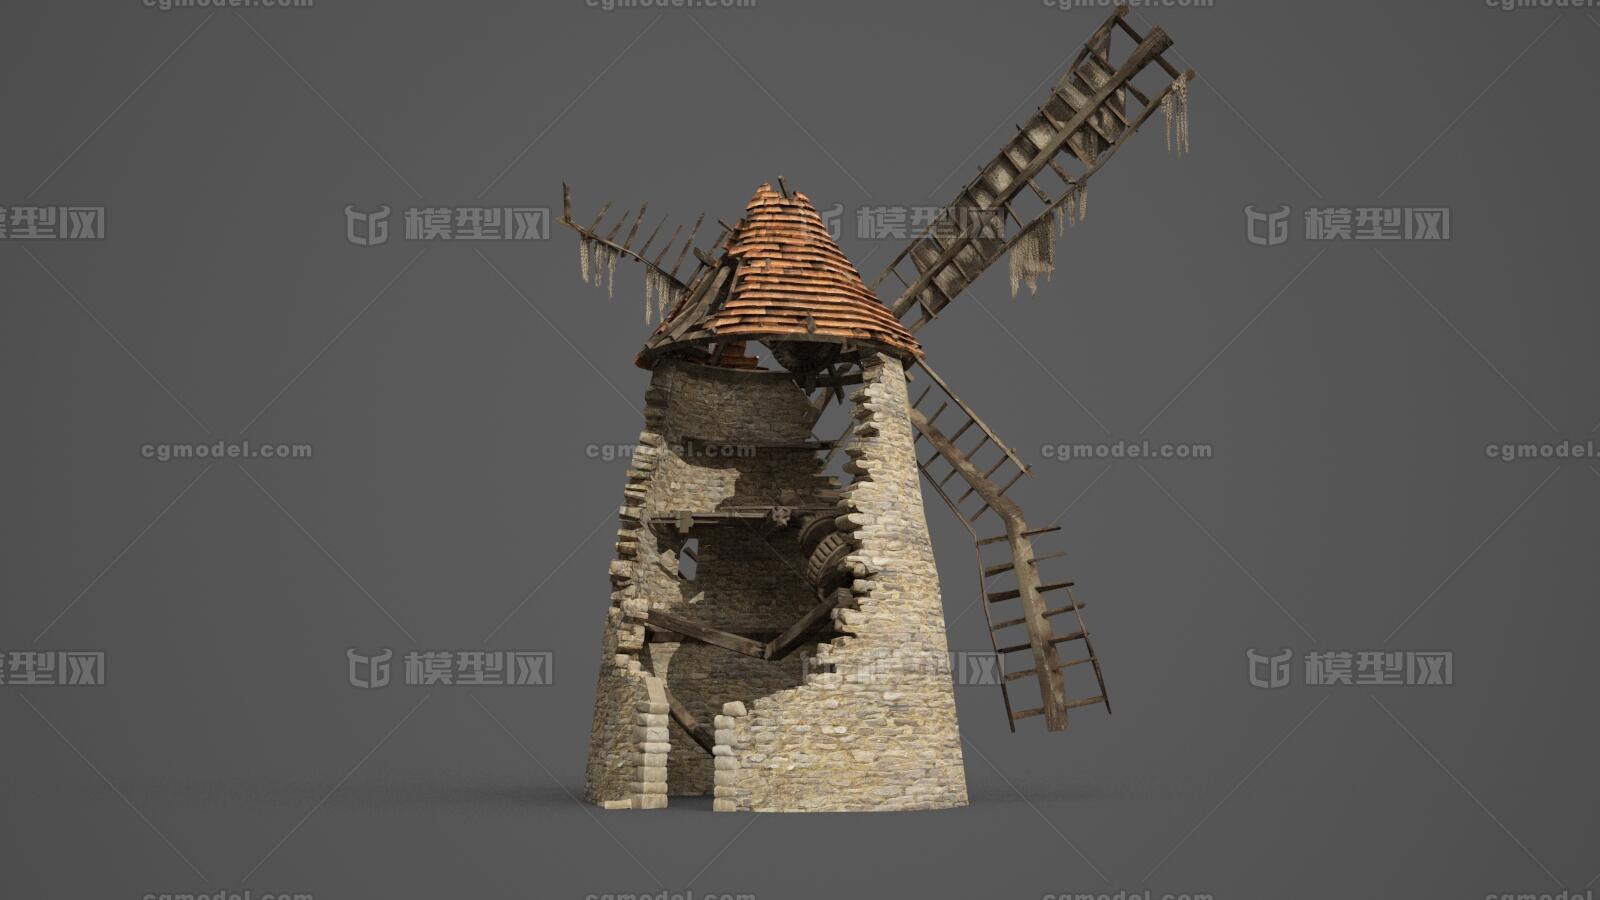 风车磨坊结构图片